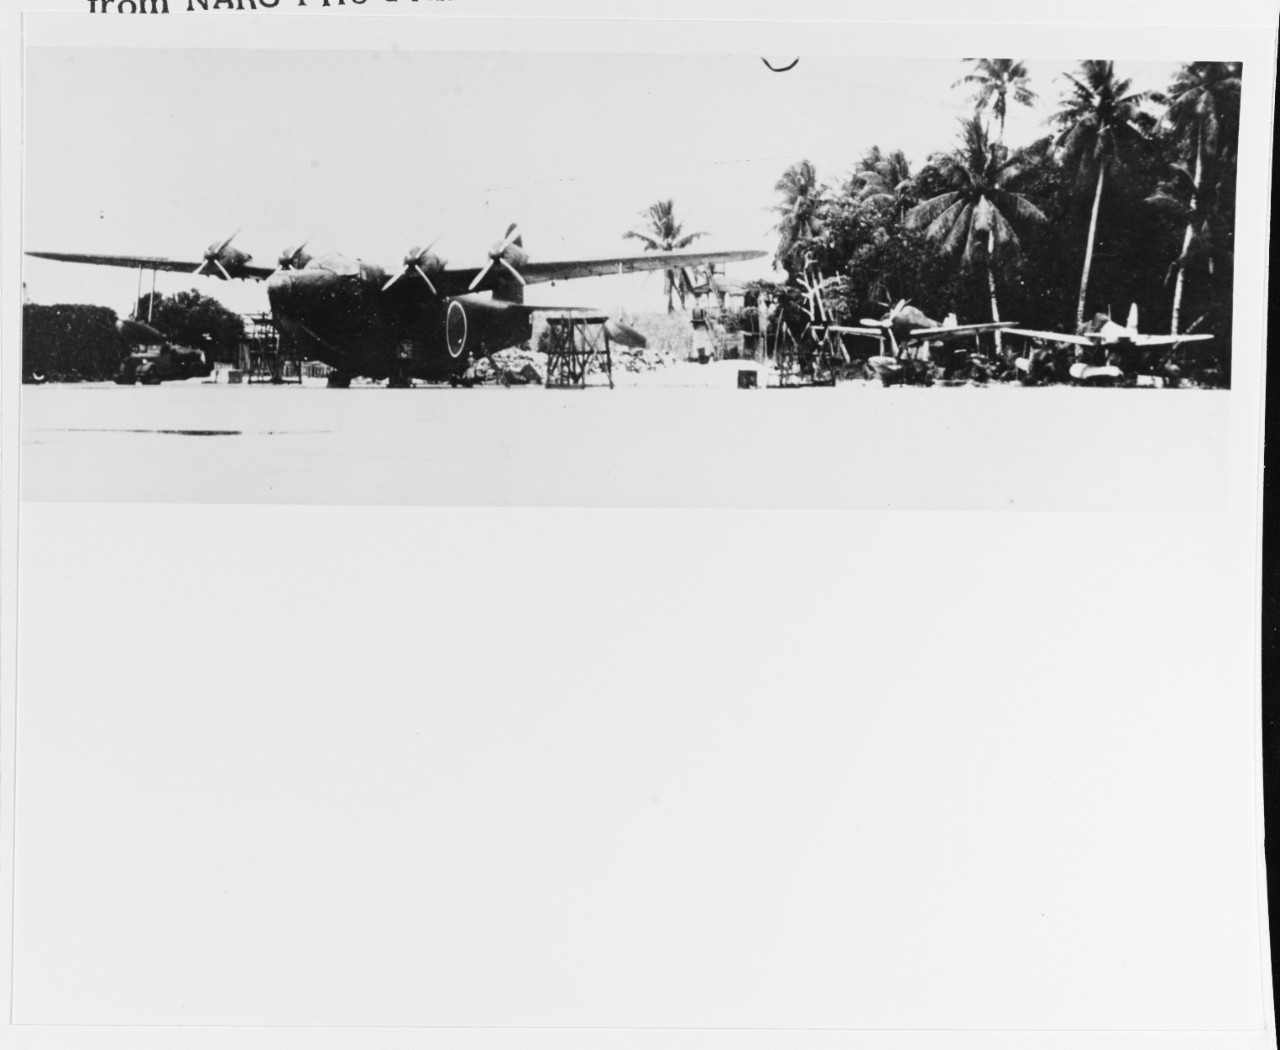 Japanese naval aircraft at a Southern Pacific base, circa 1942-1943.